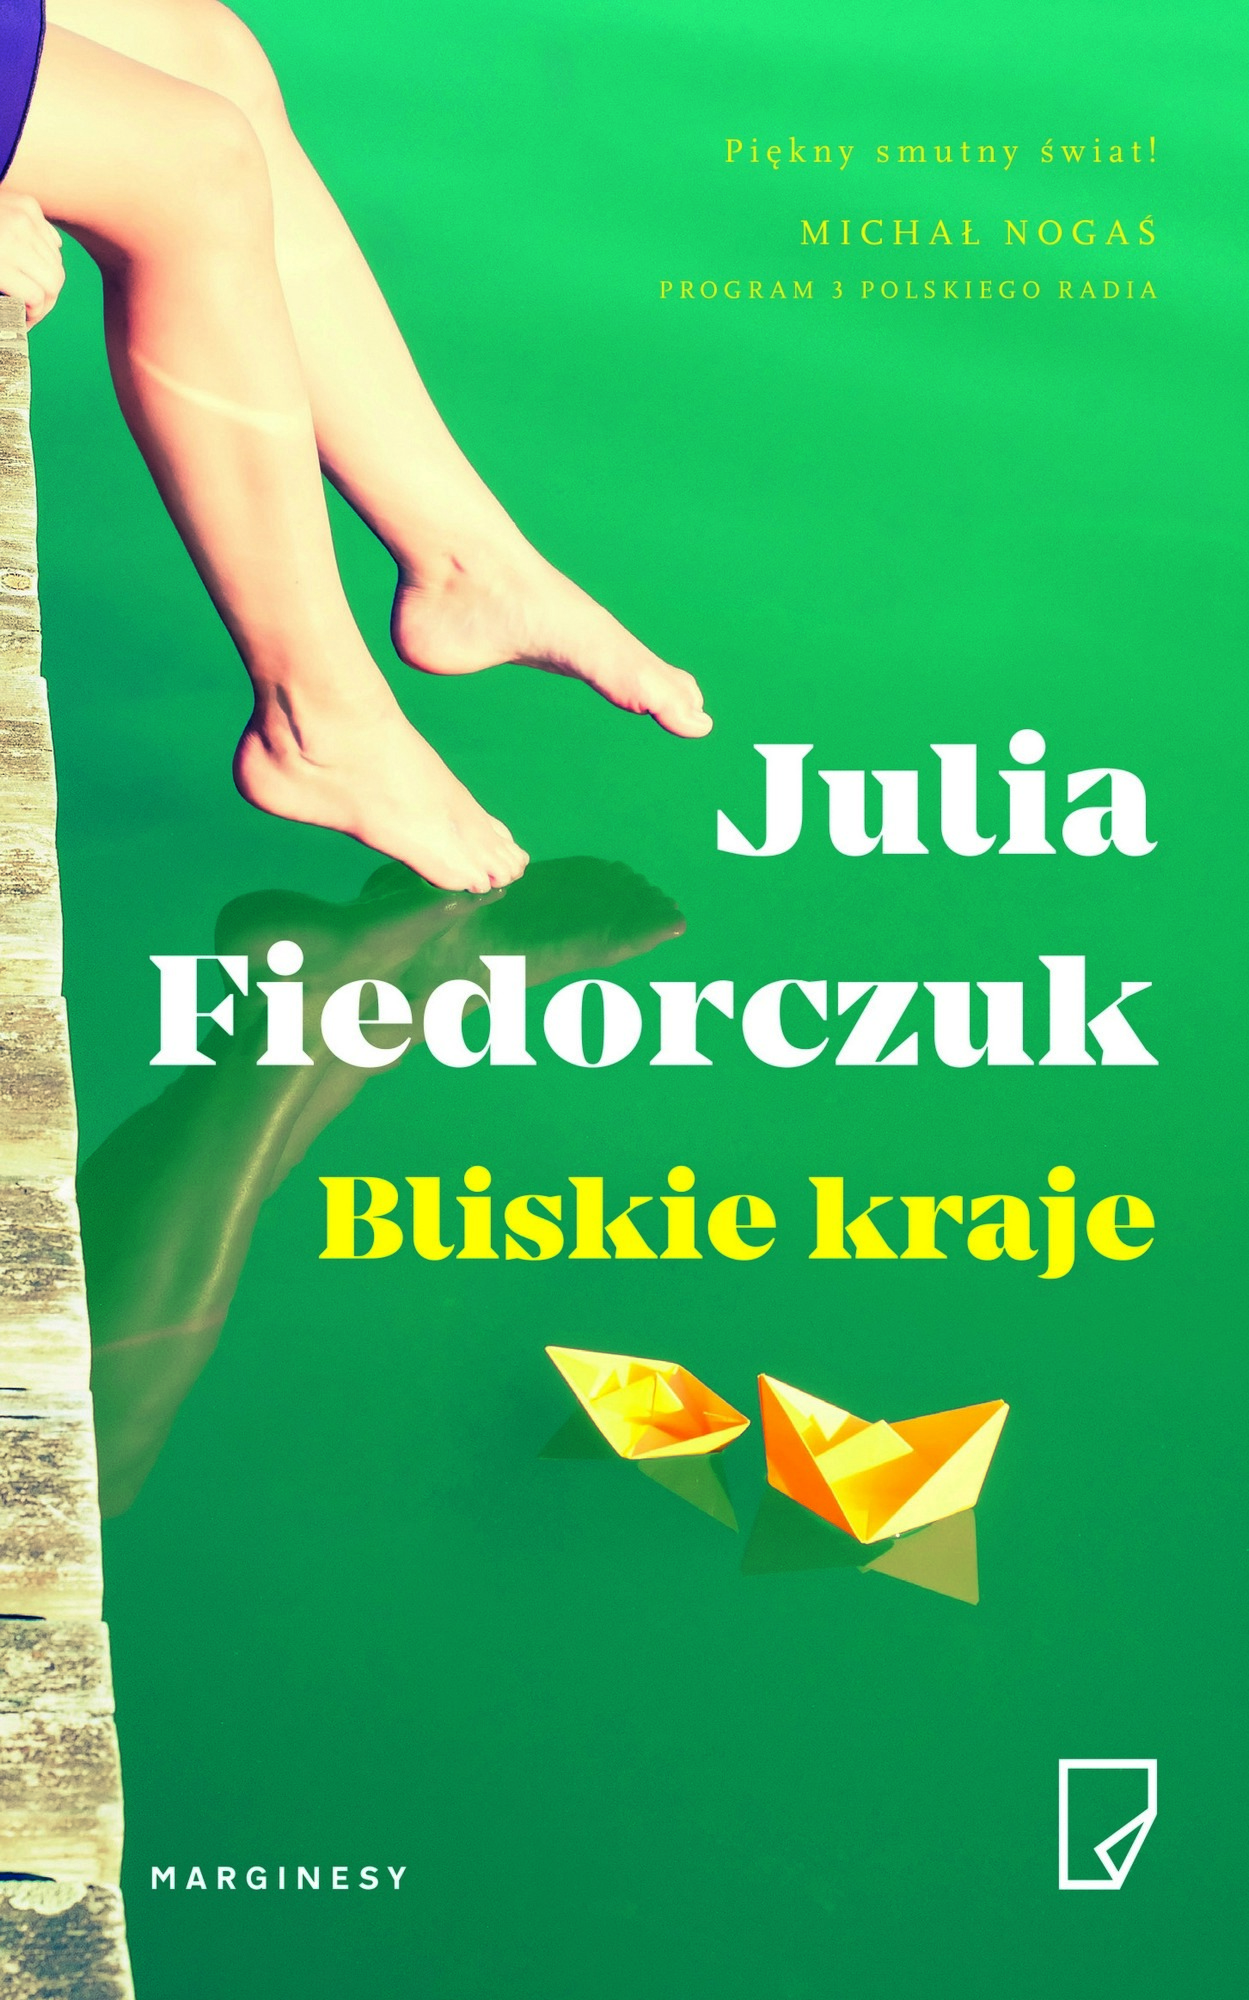 Julia Fiedorczuk, „Bliskie kraje” – okładka (źródło: materiały prasowe)